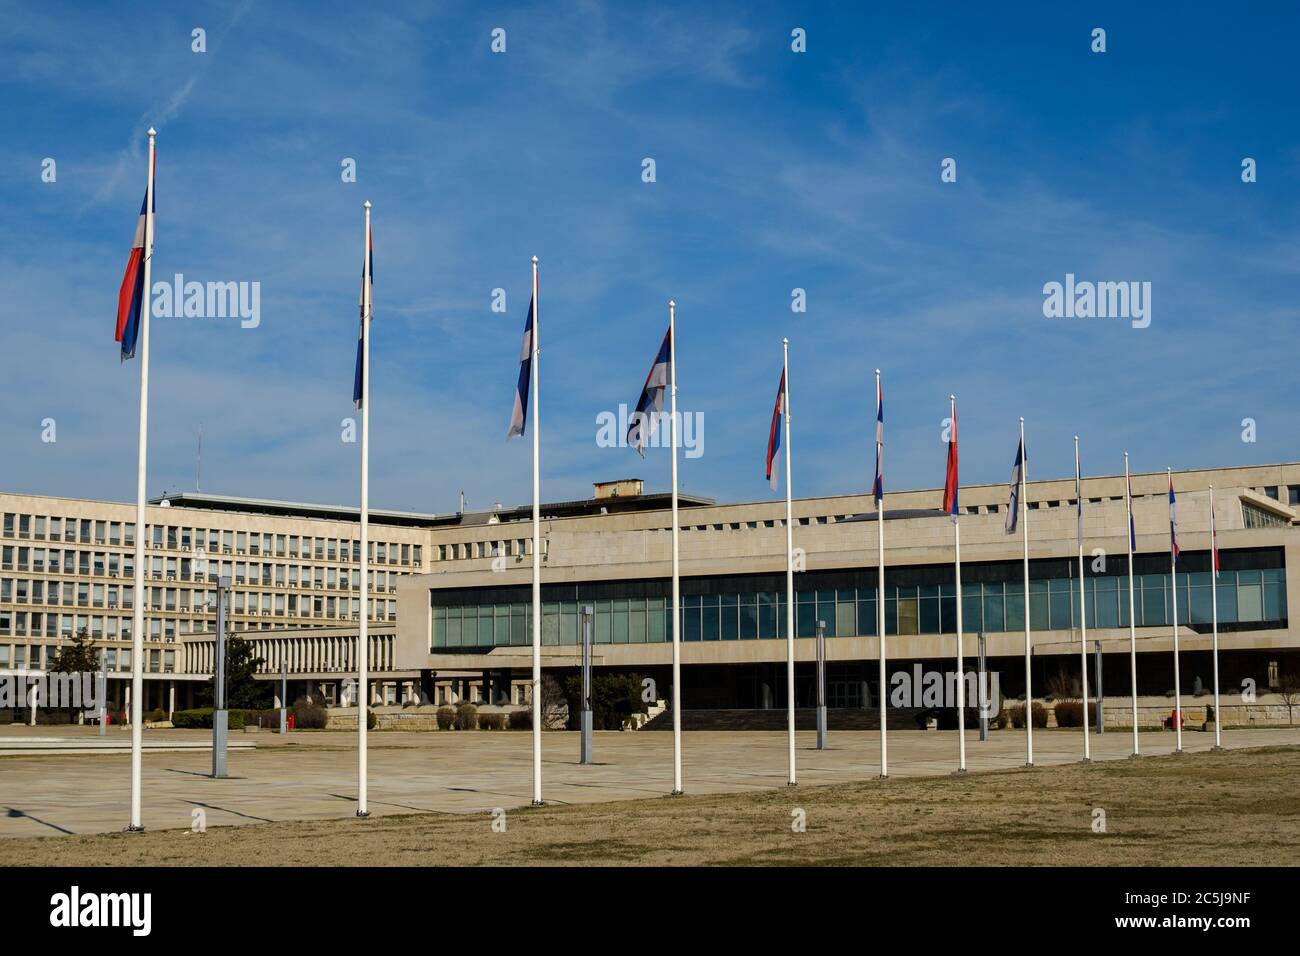 Palazzo della Serbia, sede di diversi ministeri del governo della Serbia a Belgrado, capitale della Serbia Foto Stock